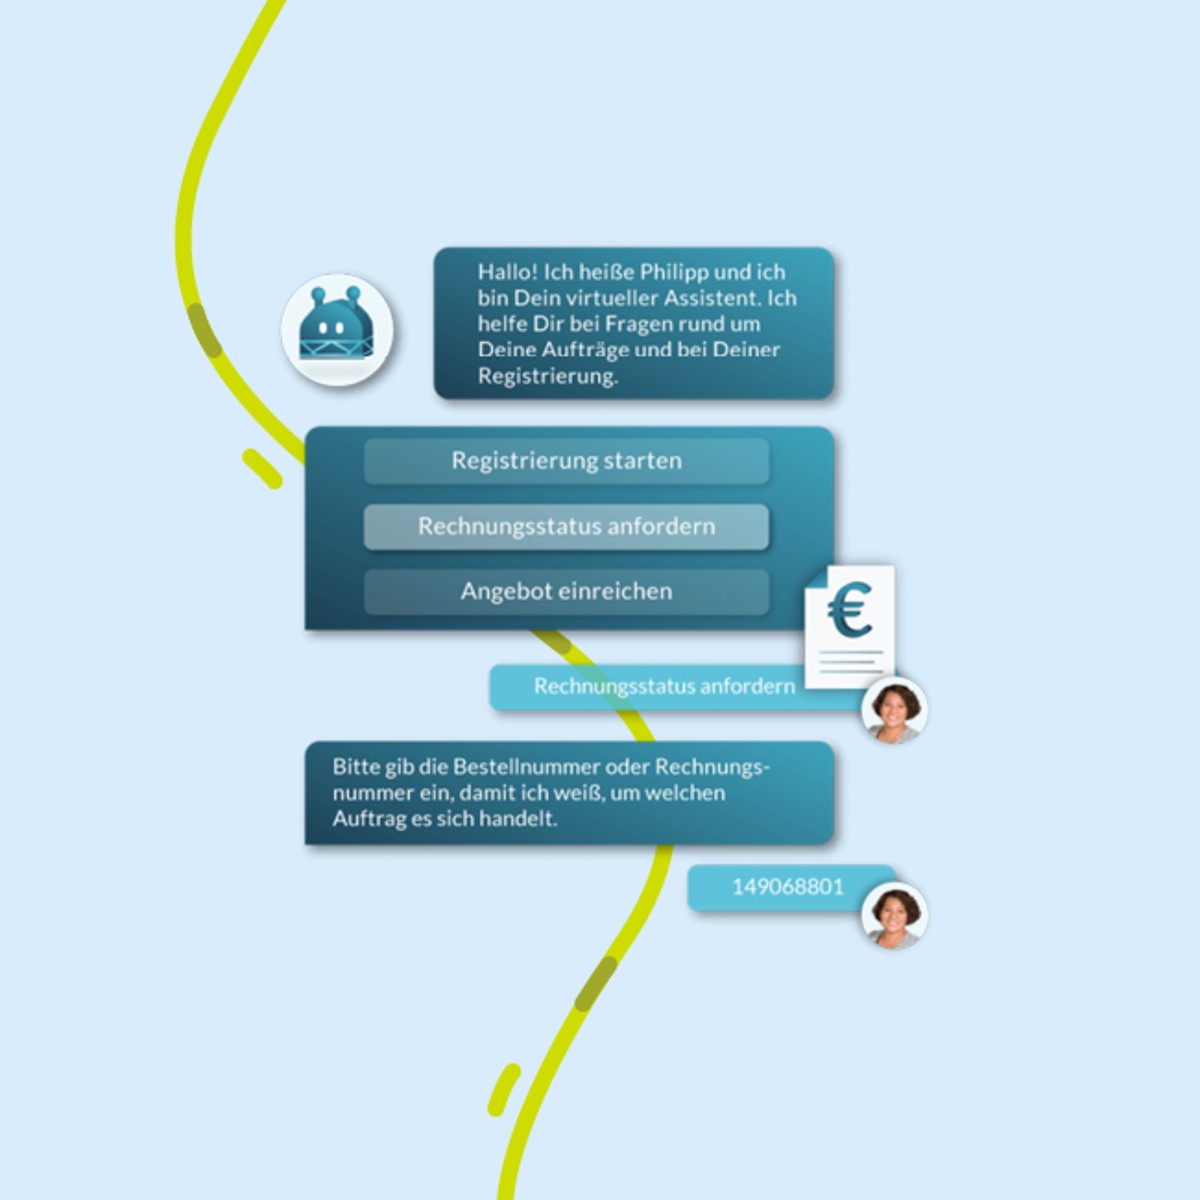 Lieferanten Onboarding mit Chatbot